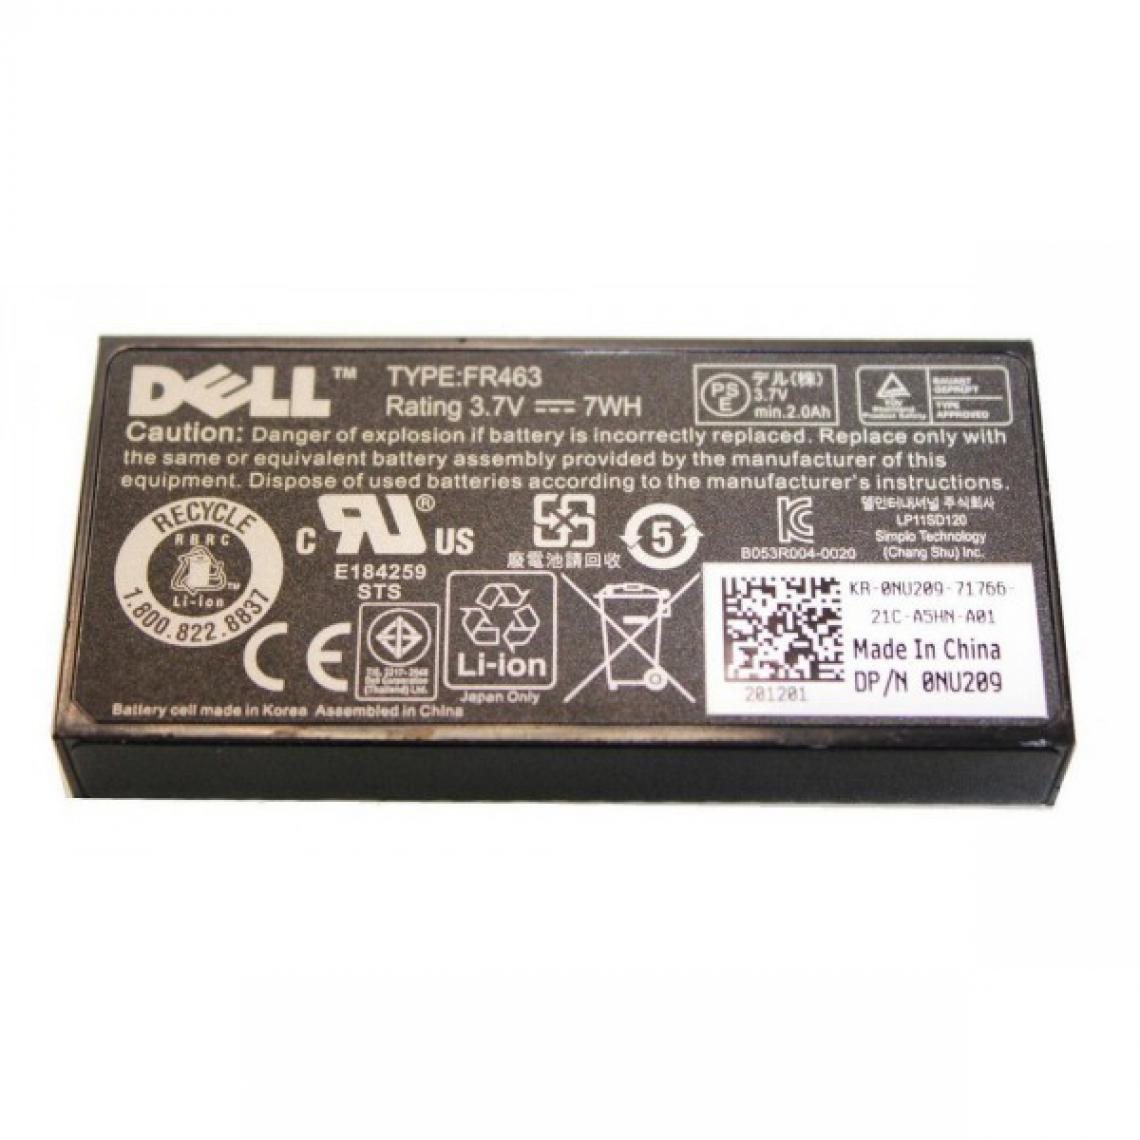 Dell - Batterie Contrôleur SAS 0NU209 FR463 Raid PERC5i Dell Serveur Pro UCP-61 Battery - Carte Contrôleur USB